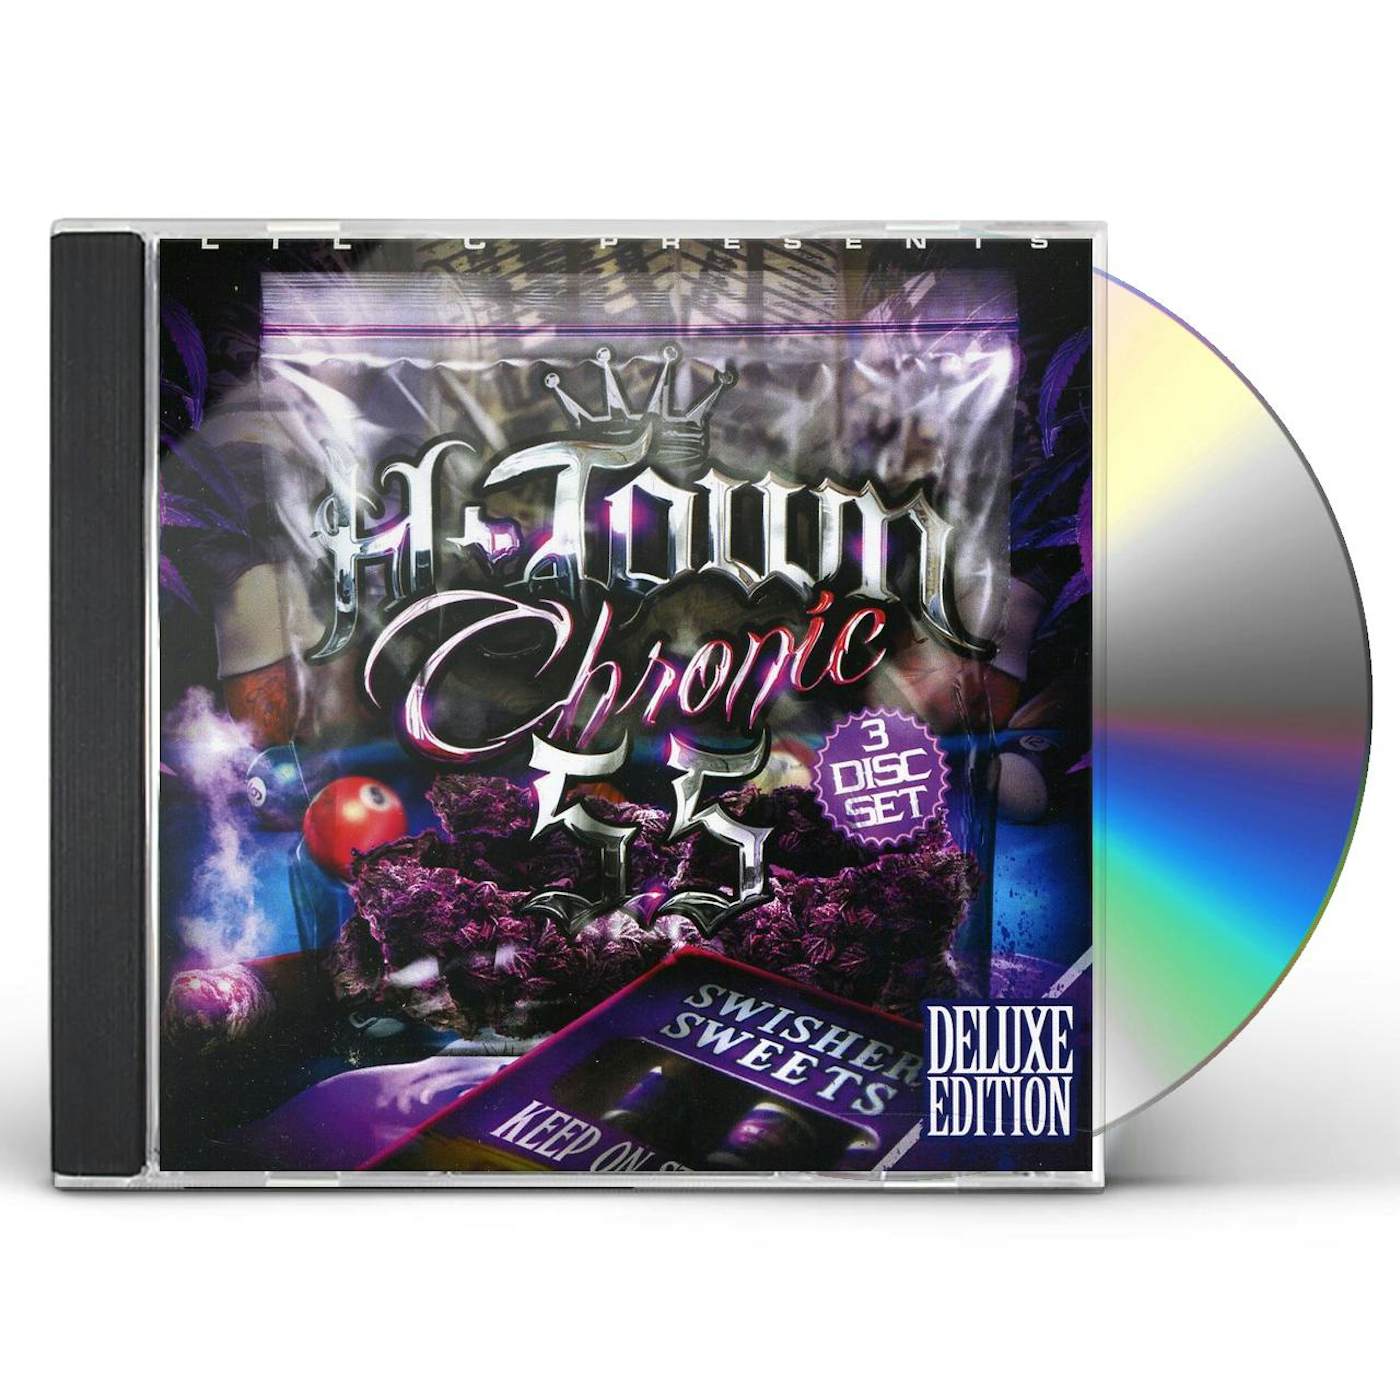 Lil C H-TOWN CHRONIC5.5 CD